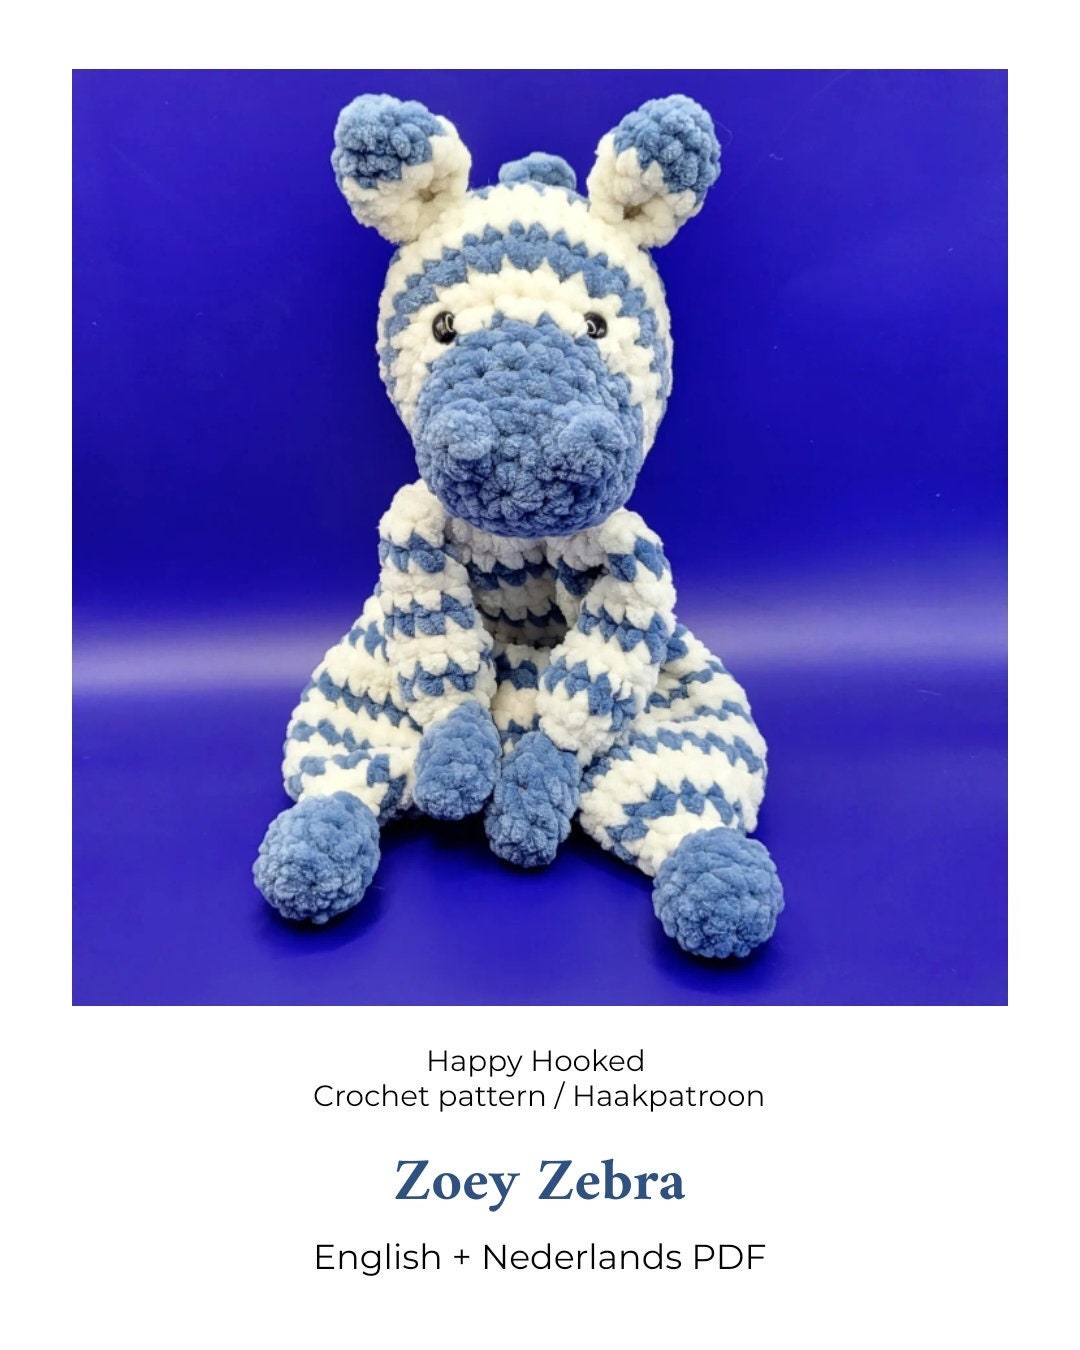 Zoey Zebra Crochet Pattern / Haakpatroon 